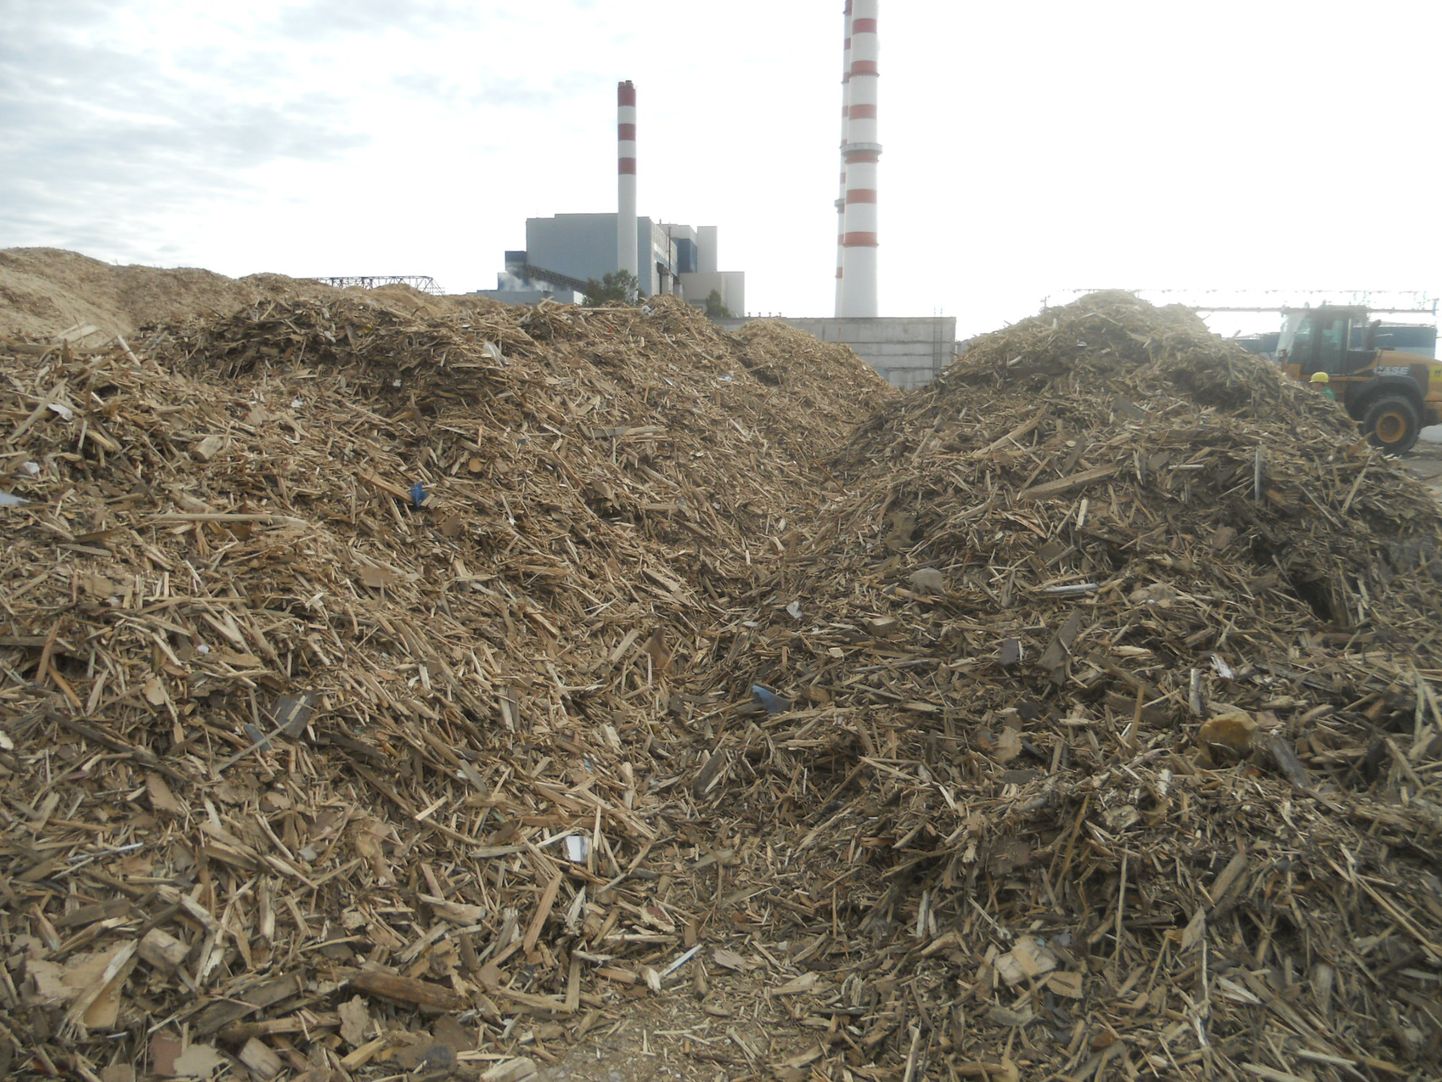 Narvas Eesti Energia Balti elektrijaama lähedale ladestatud puidujäätmed.